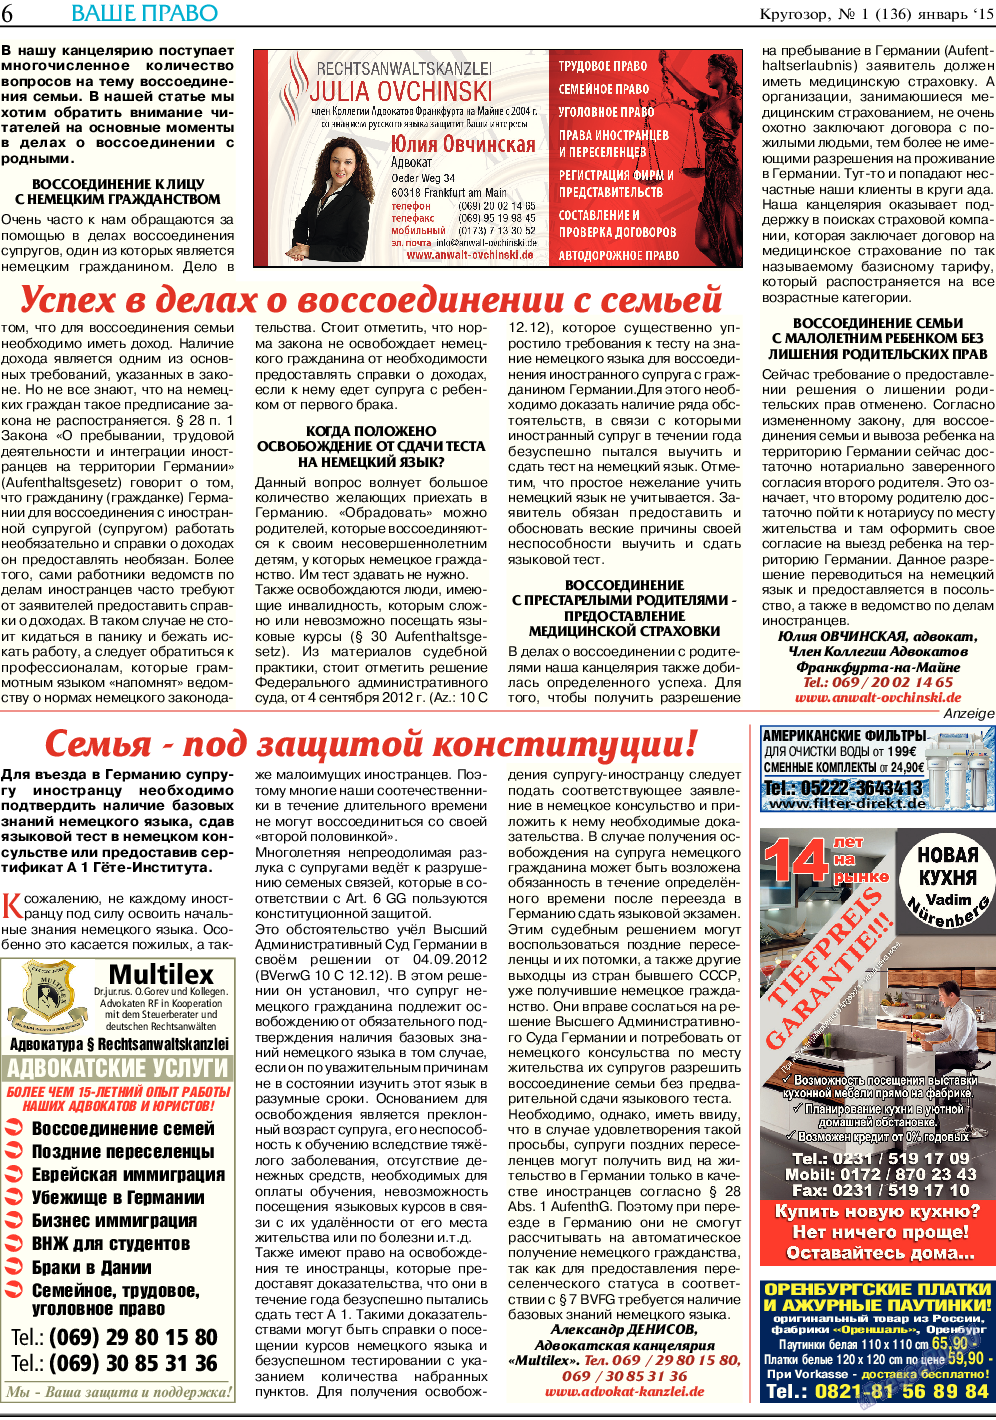 Кругозор, газета. 2015 №1 стр.6